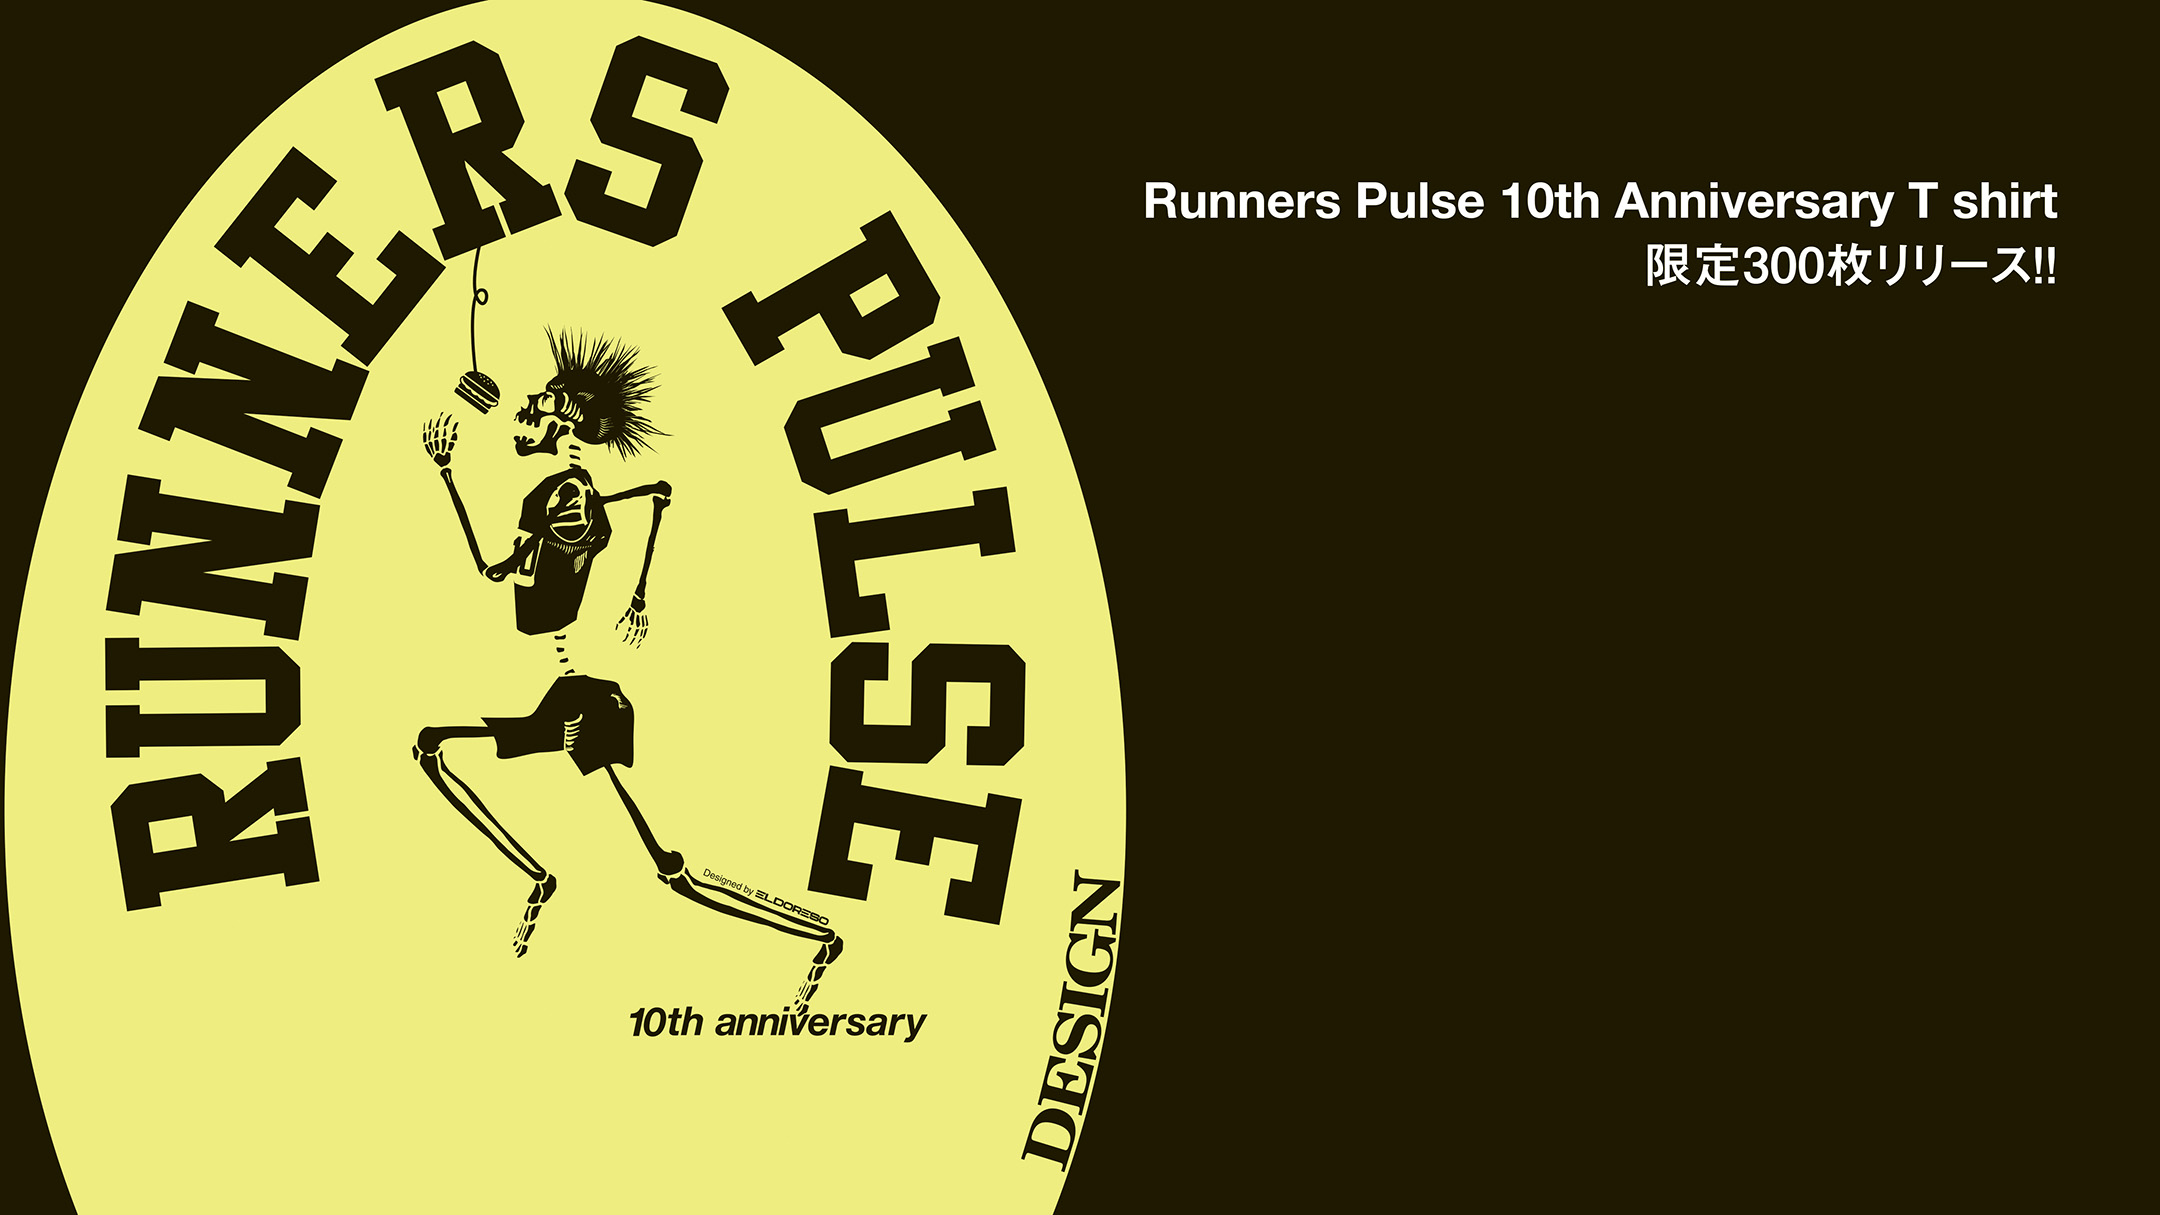 Runners Pulse 10th Anniversary T shirt